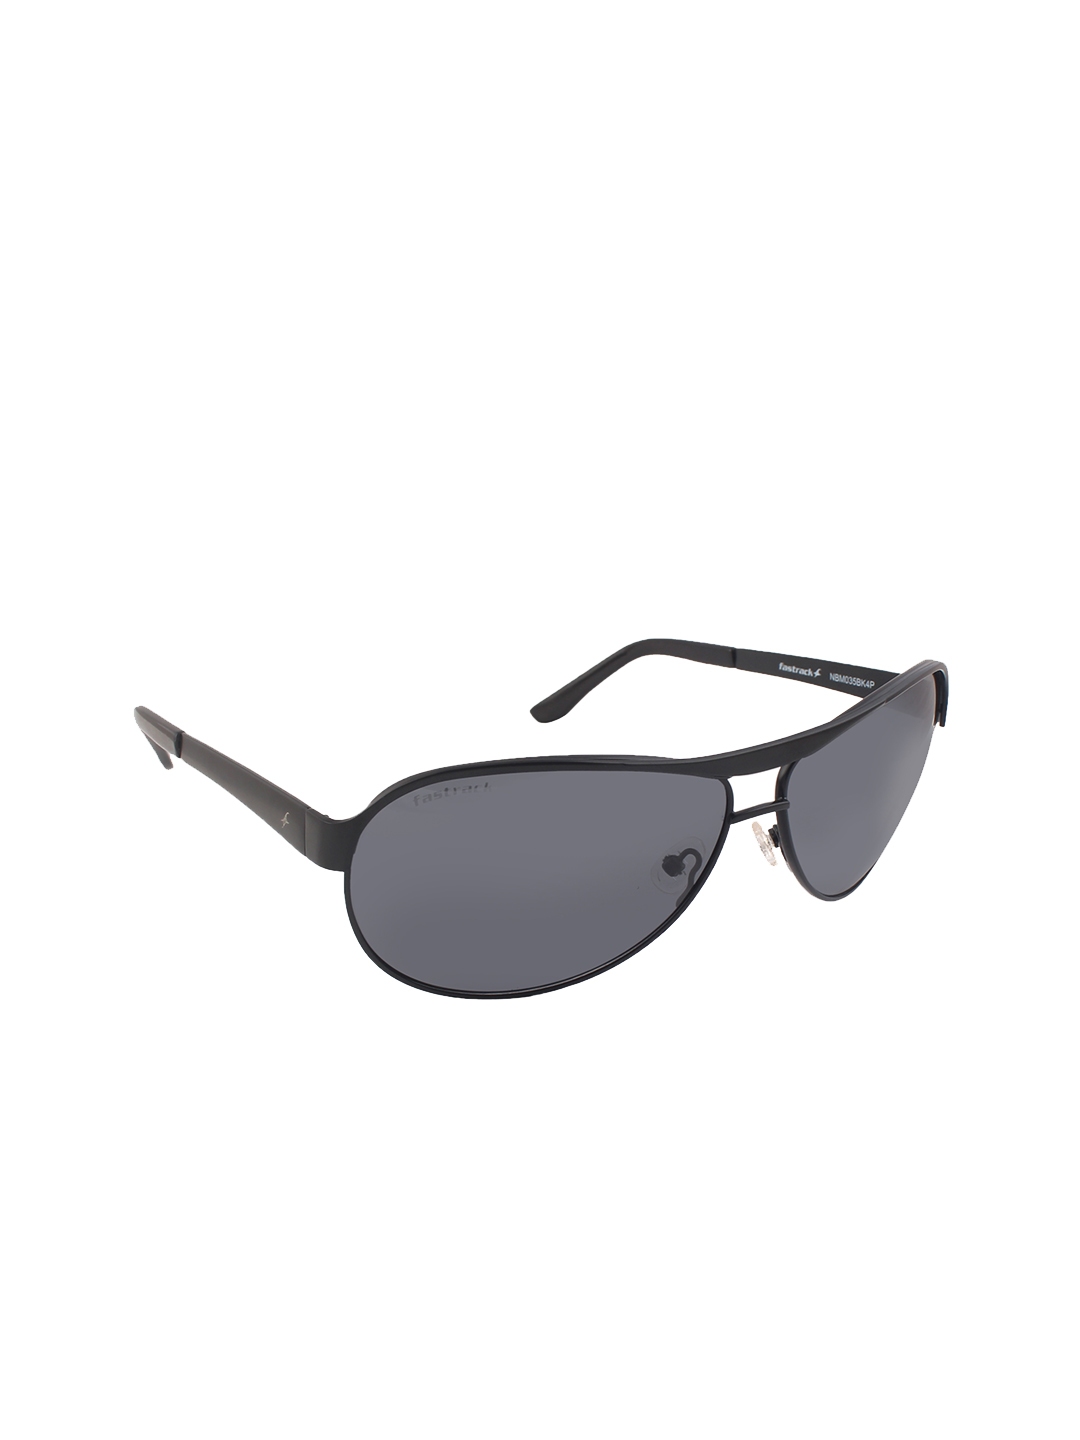 Buy Fastrack Men Aviator Sunglasses Sunglasses For Men 11291706 Myntra 